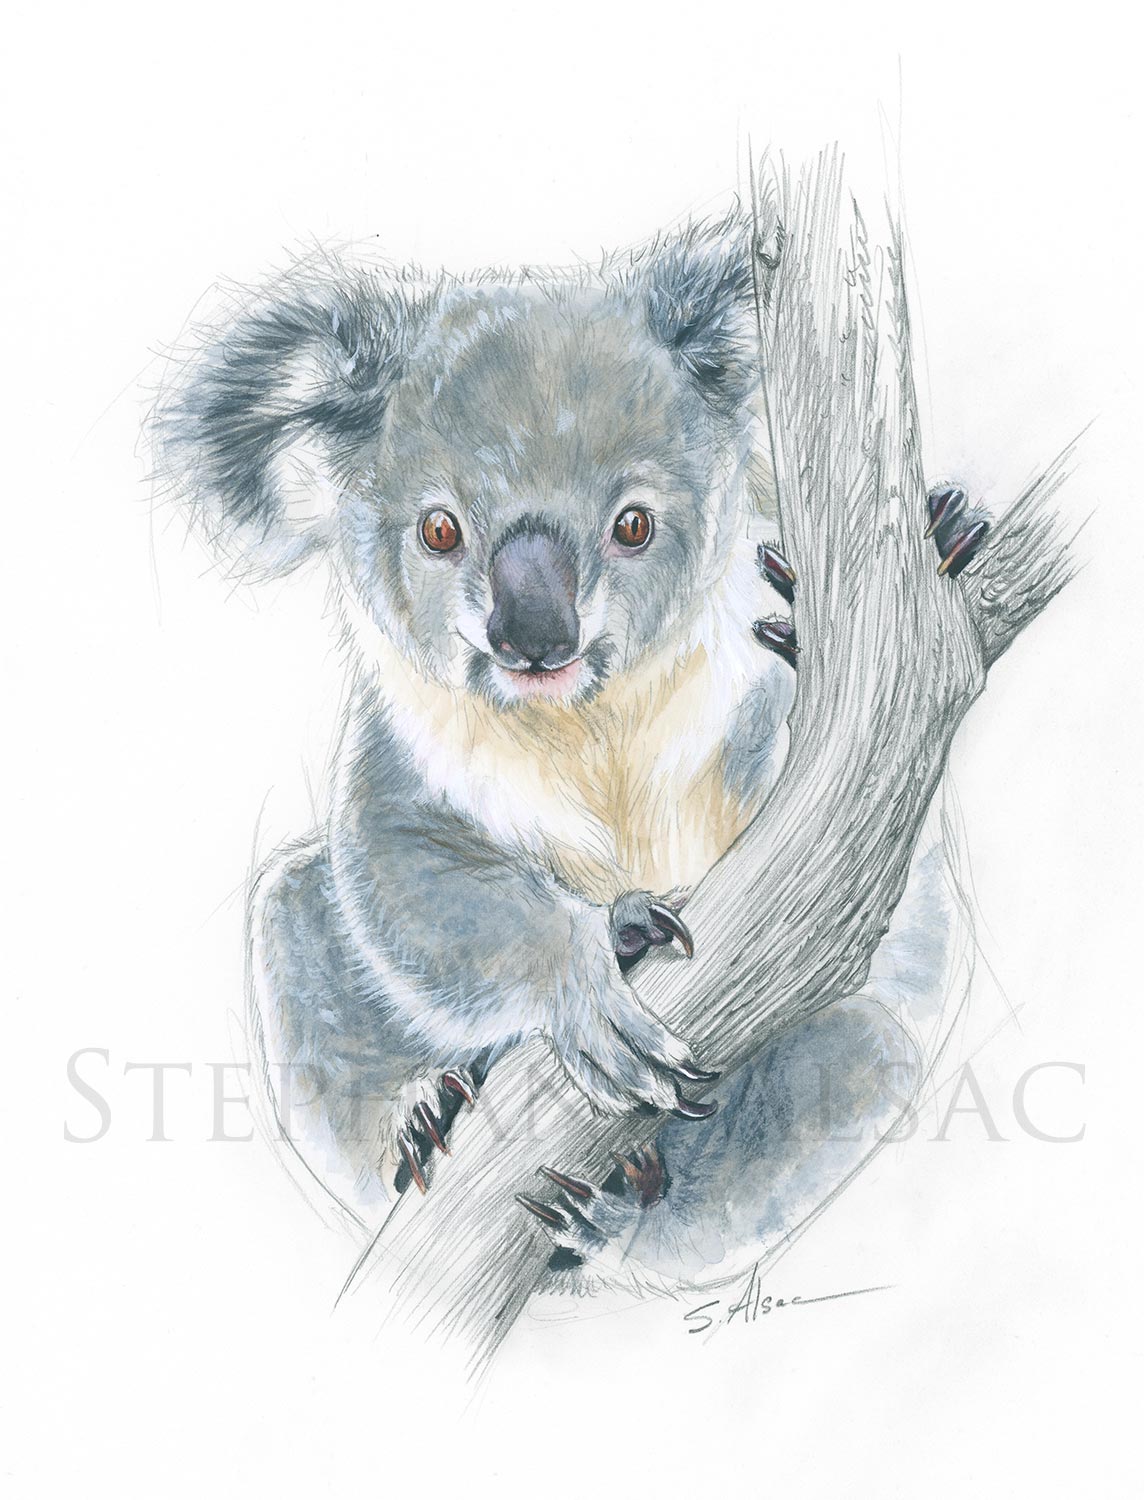 https://www.stephane-alsac.com/wp-content/uploads/illustration-dessin-naturaliste-bebe-koala.jpg